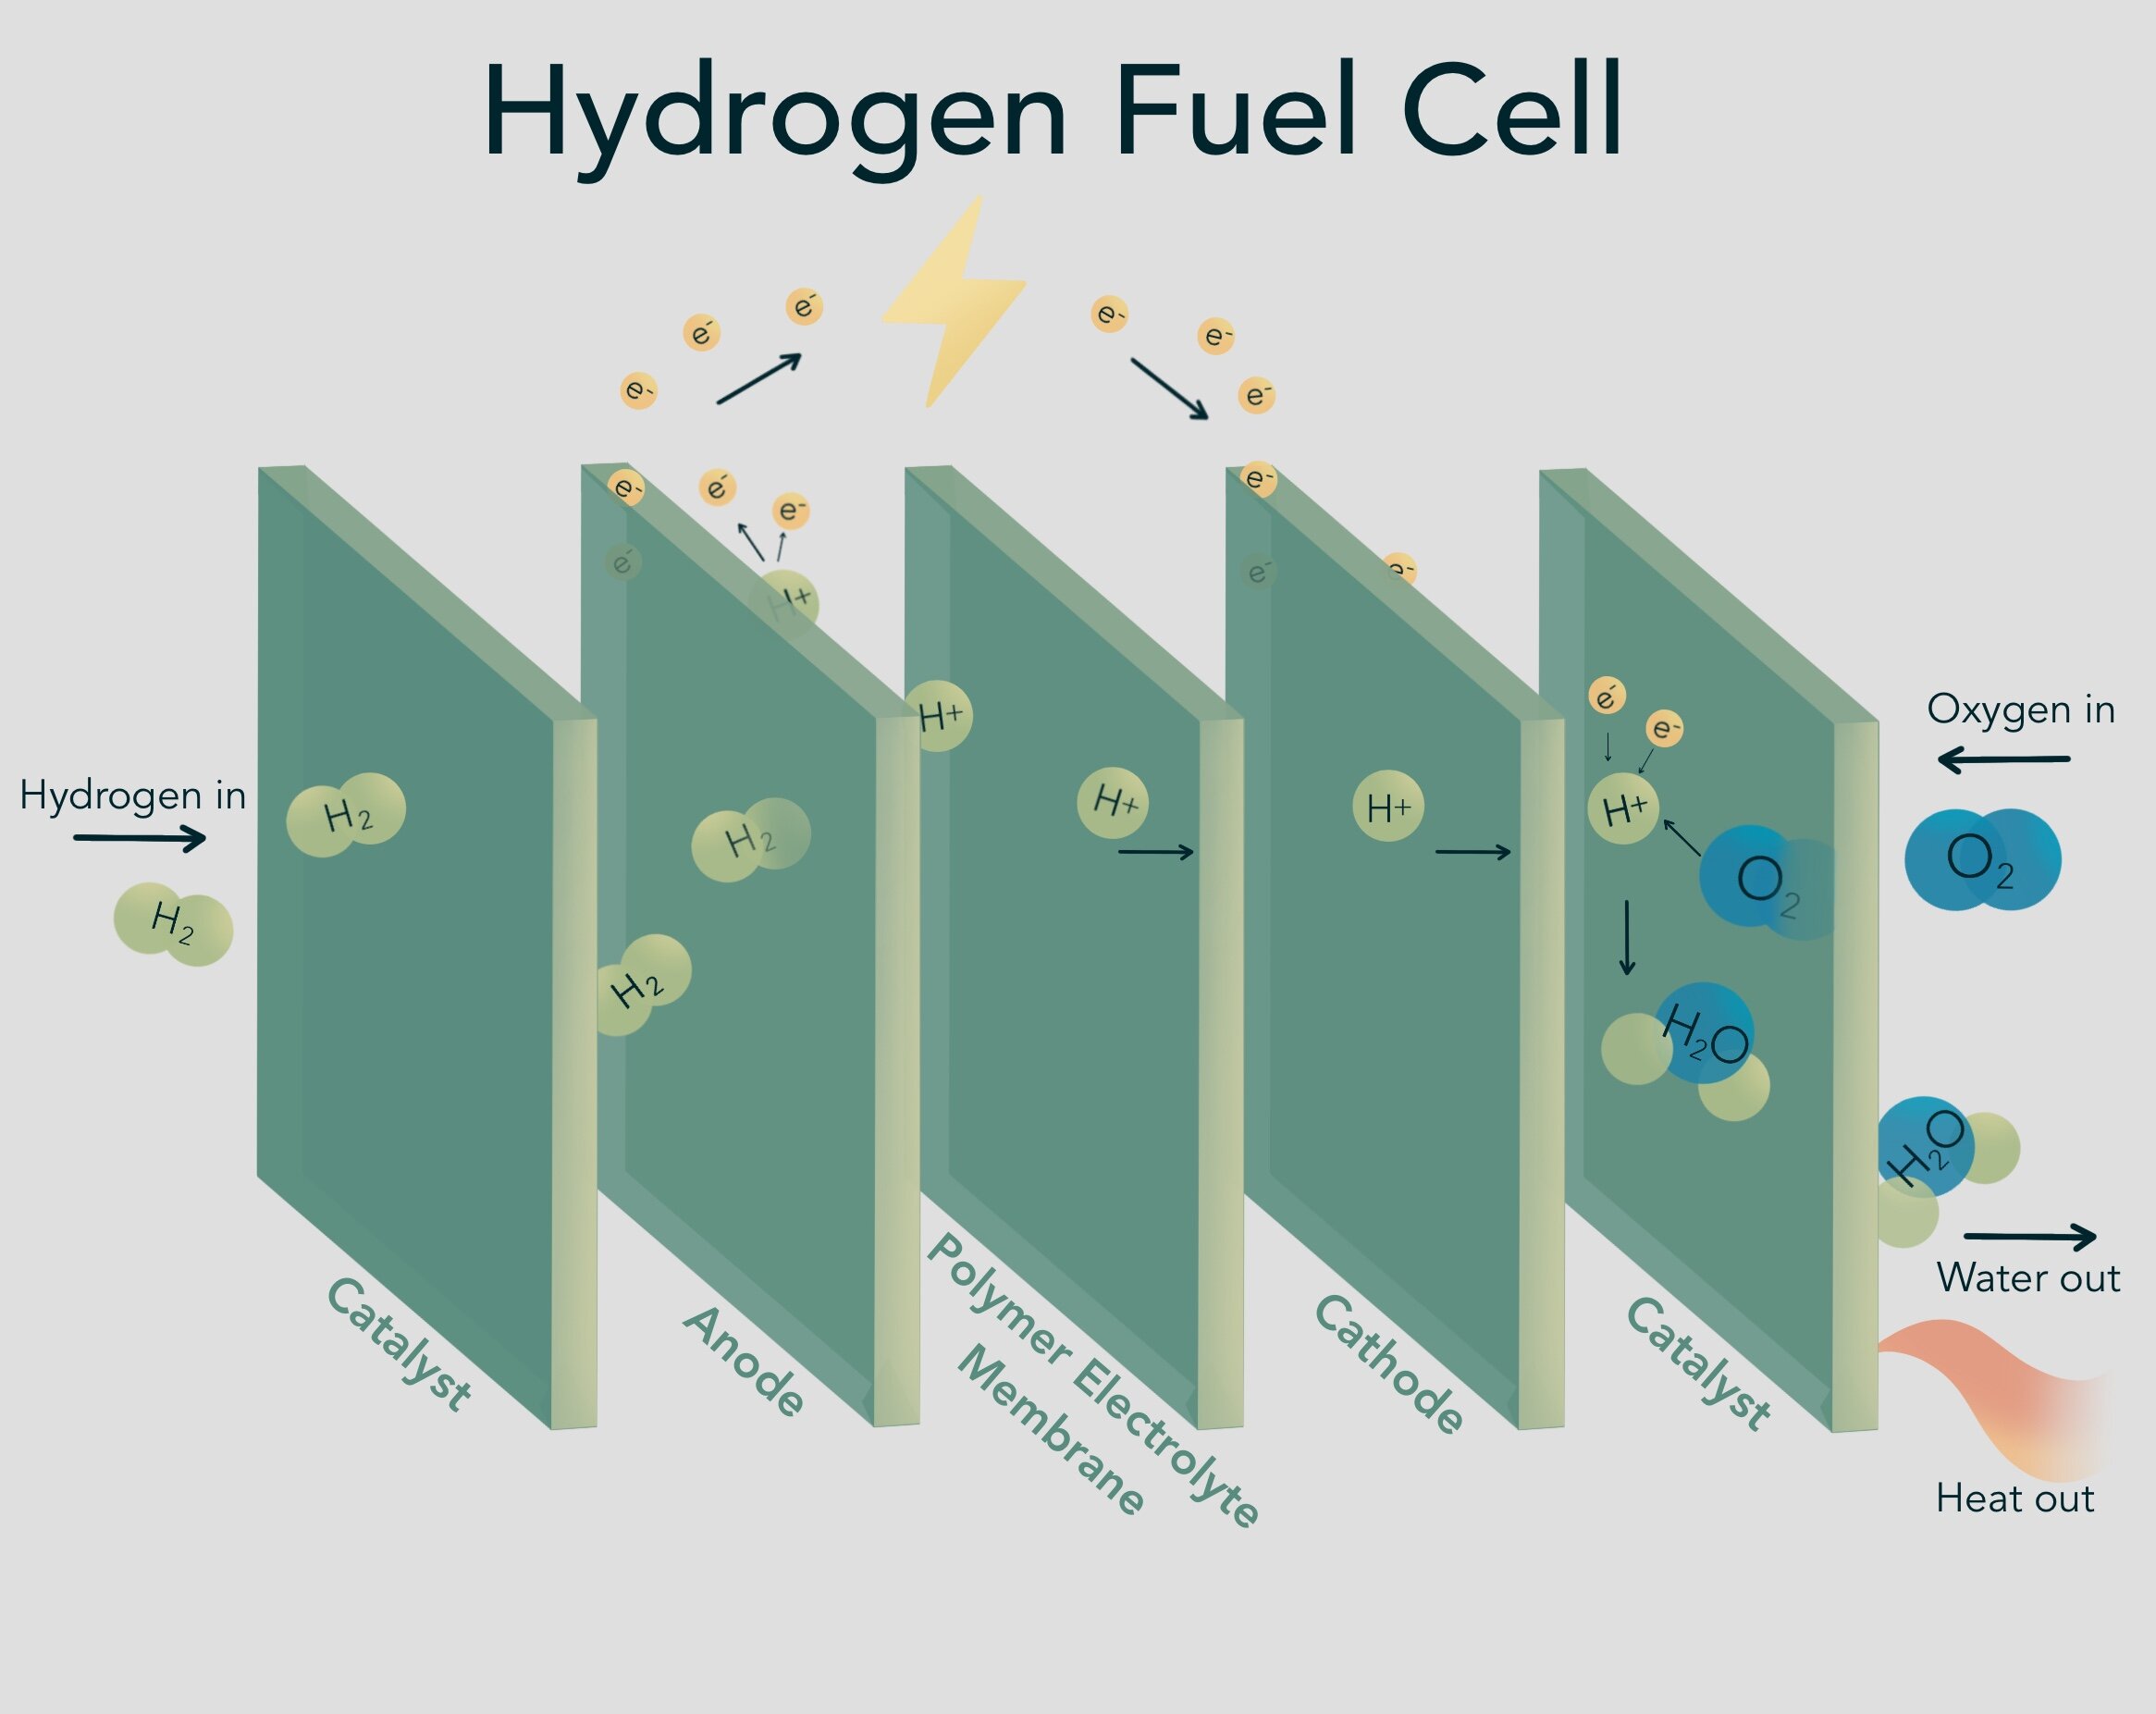 氢燃料电池图。来源:Climable.org